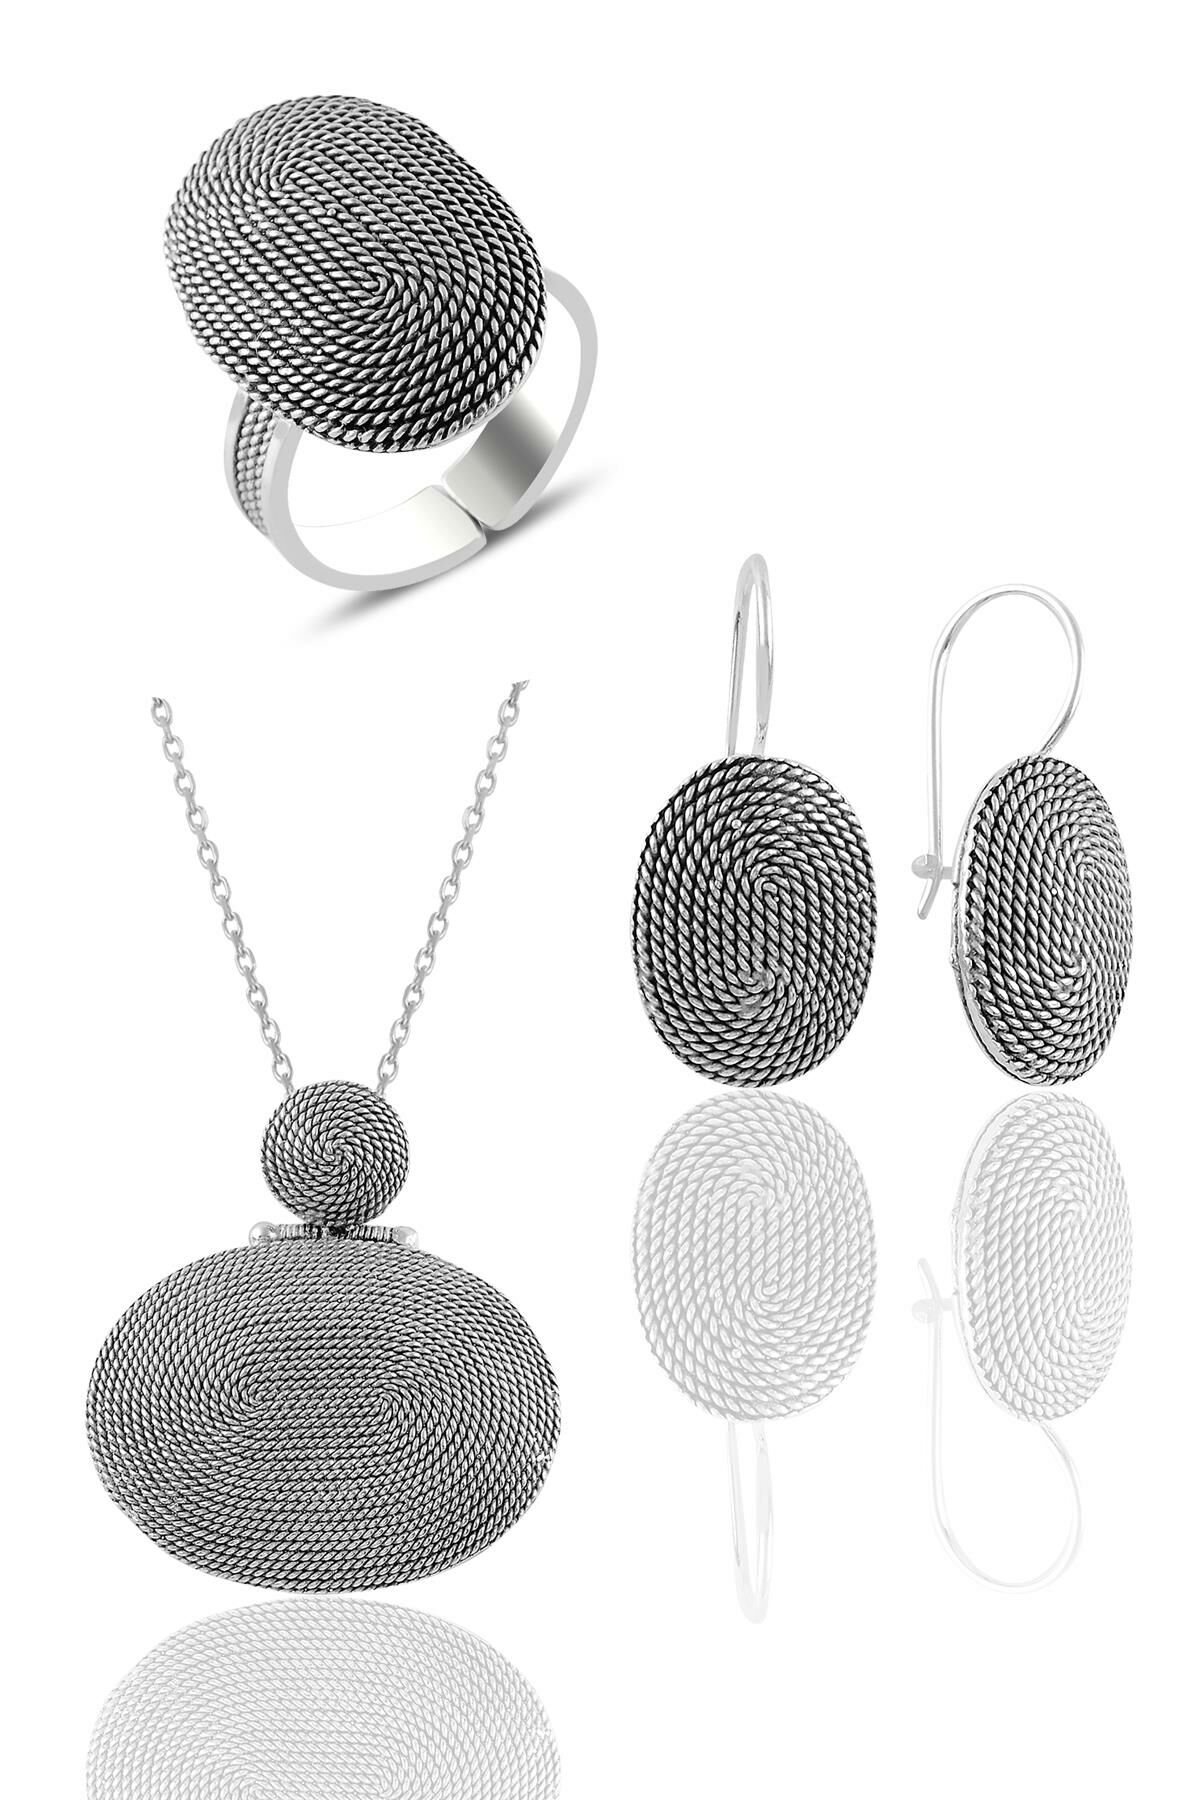 Silver snail pattern oval filigree triple set